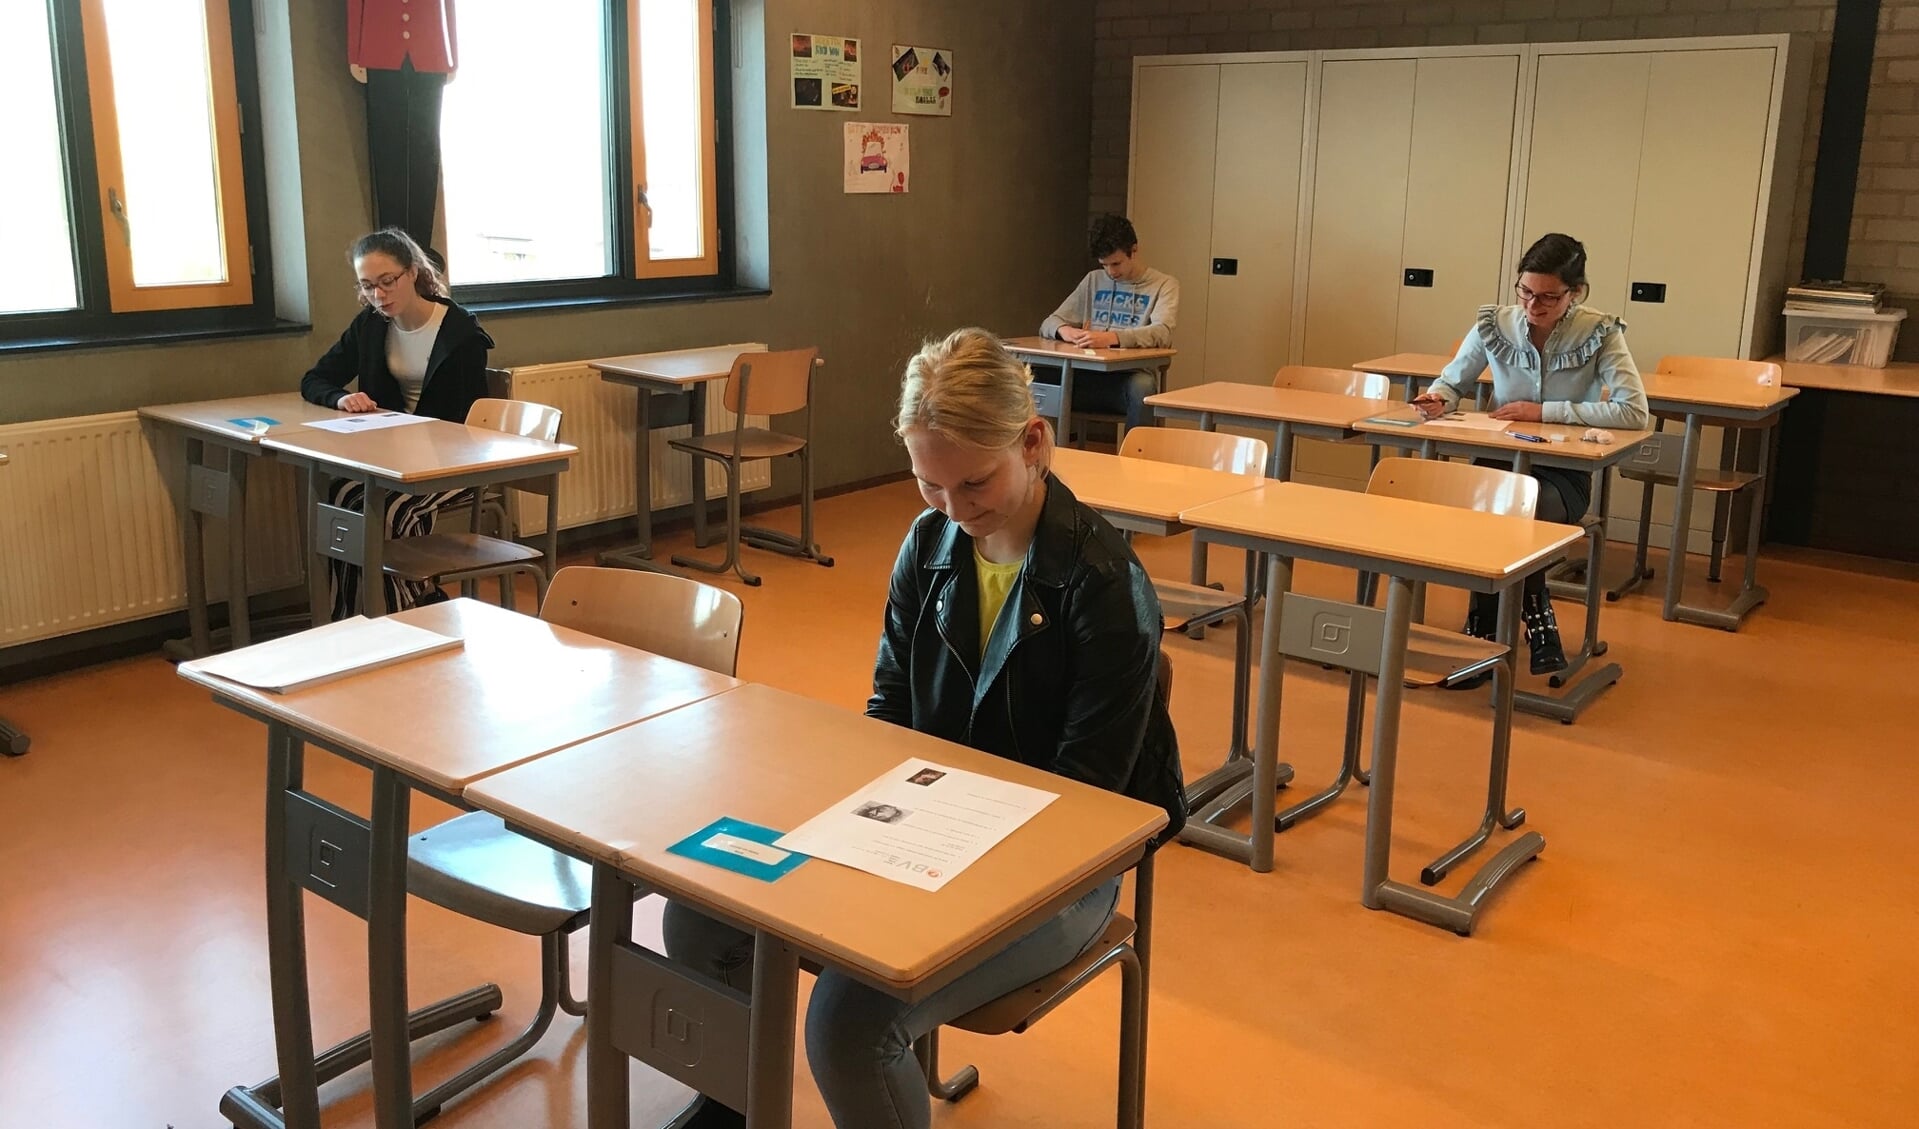 Ook op het Willem van Oranje College zitten leerlingen tijdens de schoolexamens minimaal anderhalve meter uit elkaar.